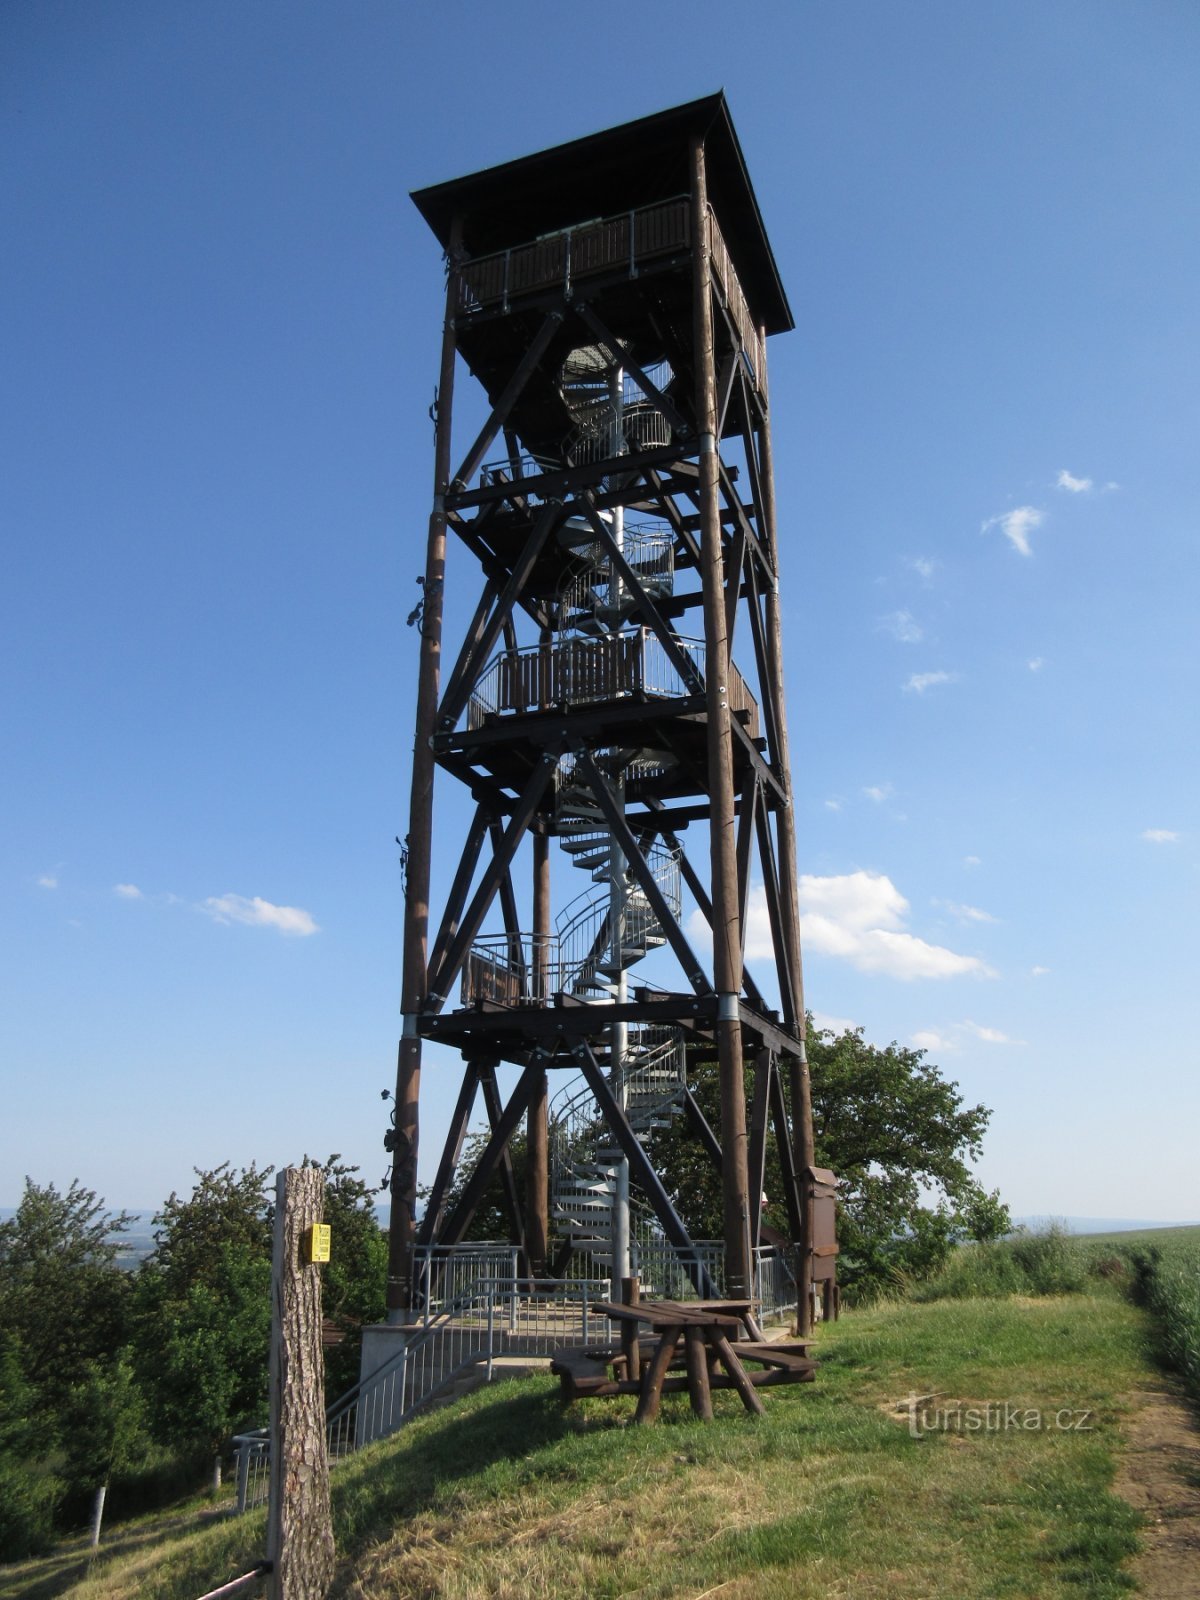 Polešovice and Floriánka lookout tower